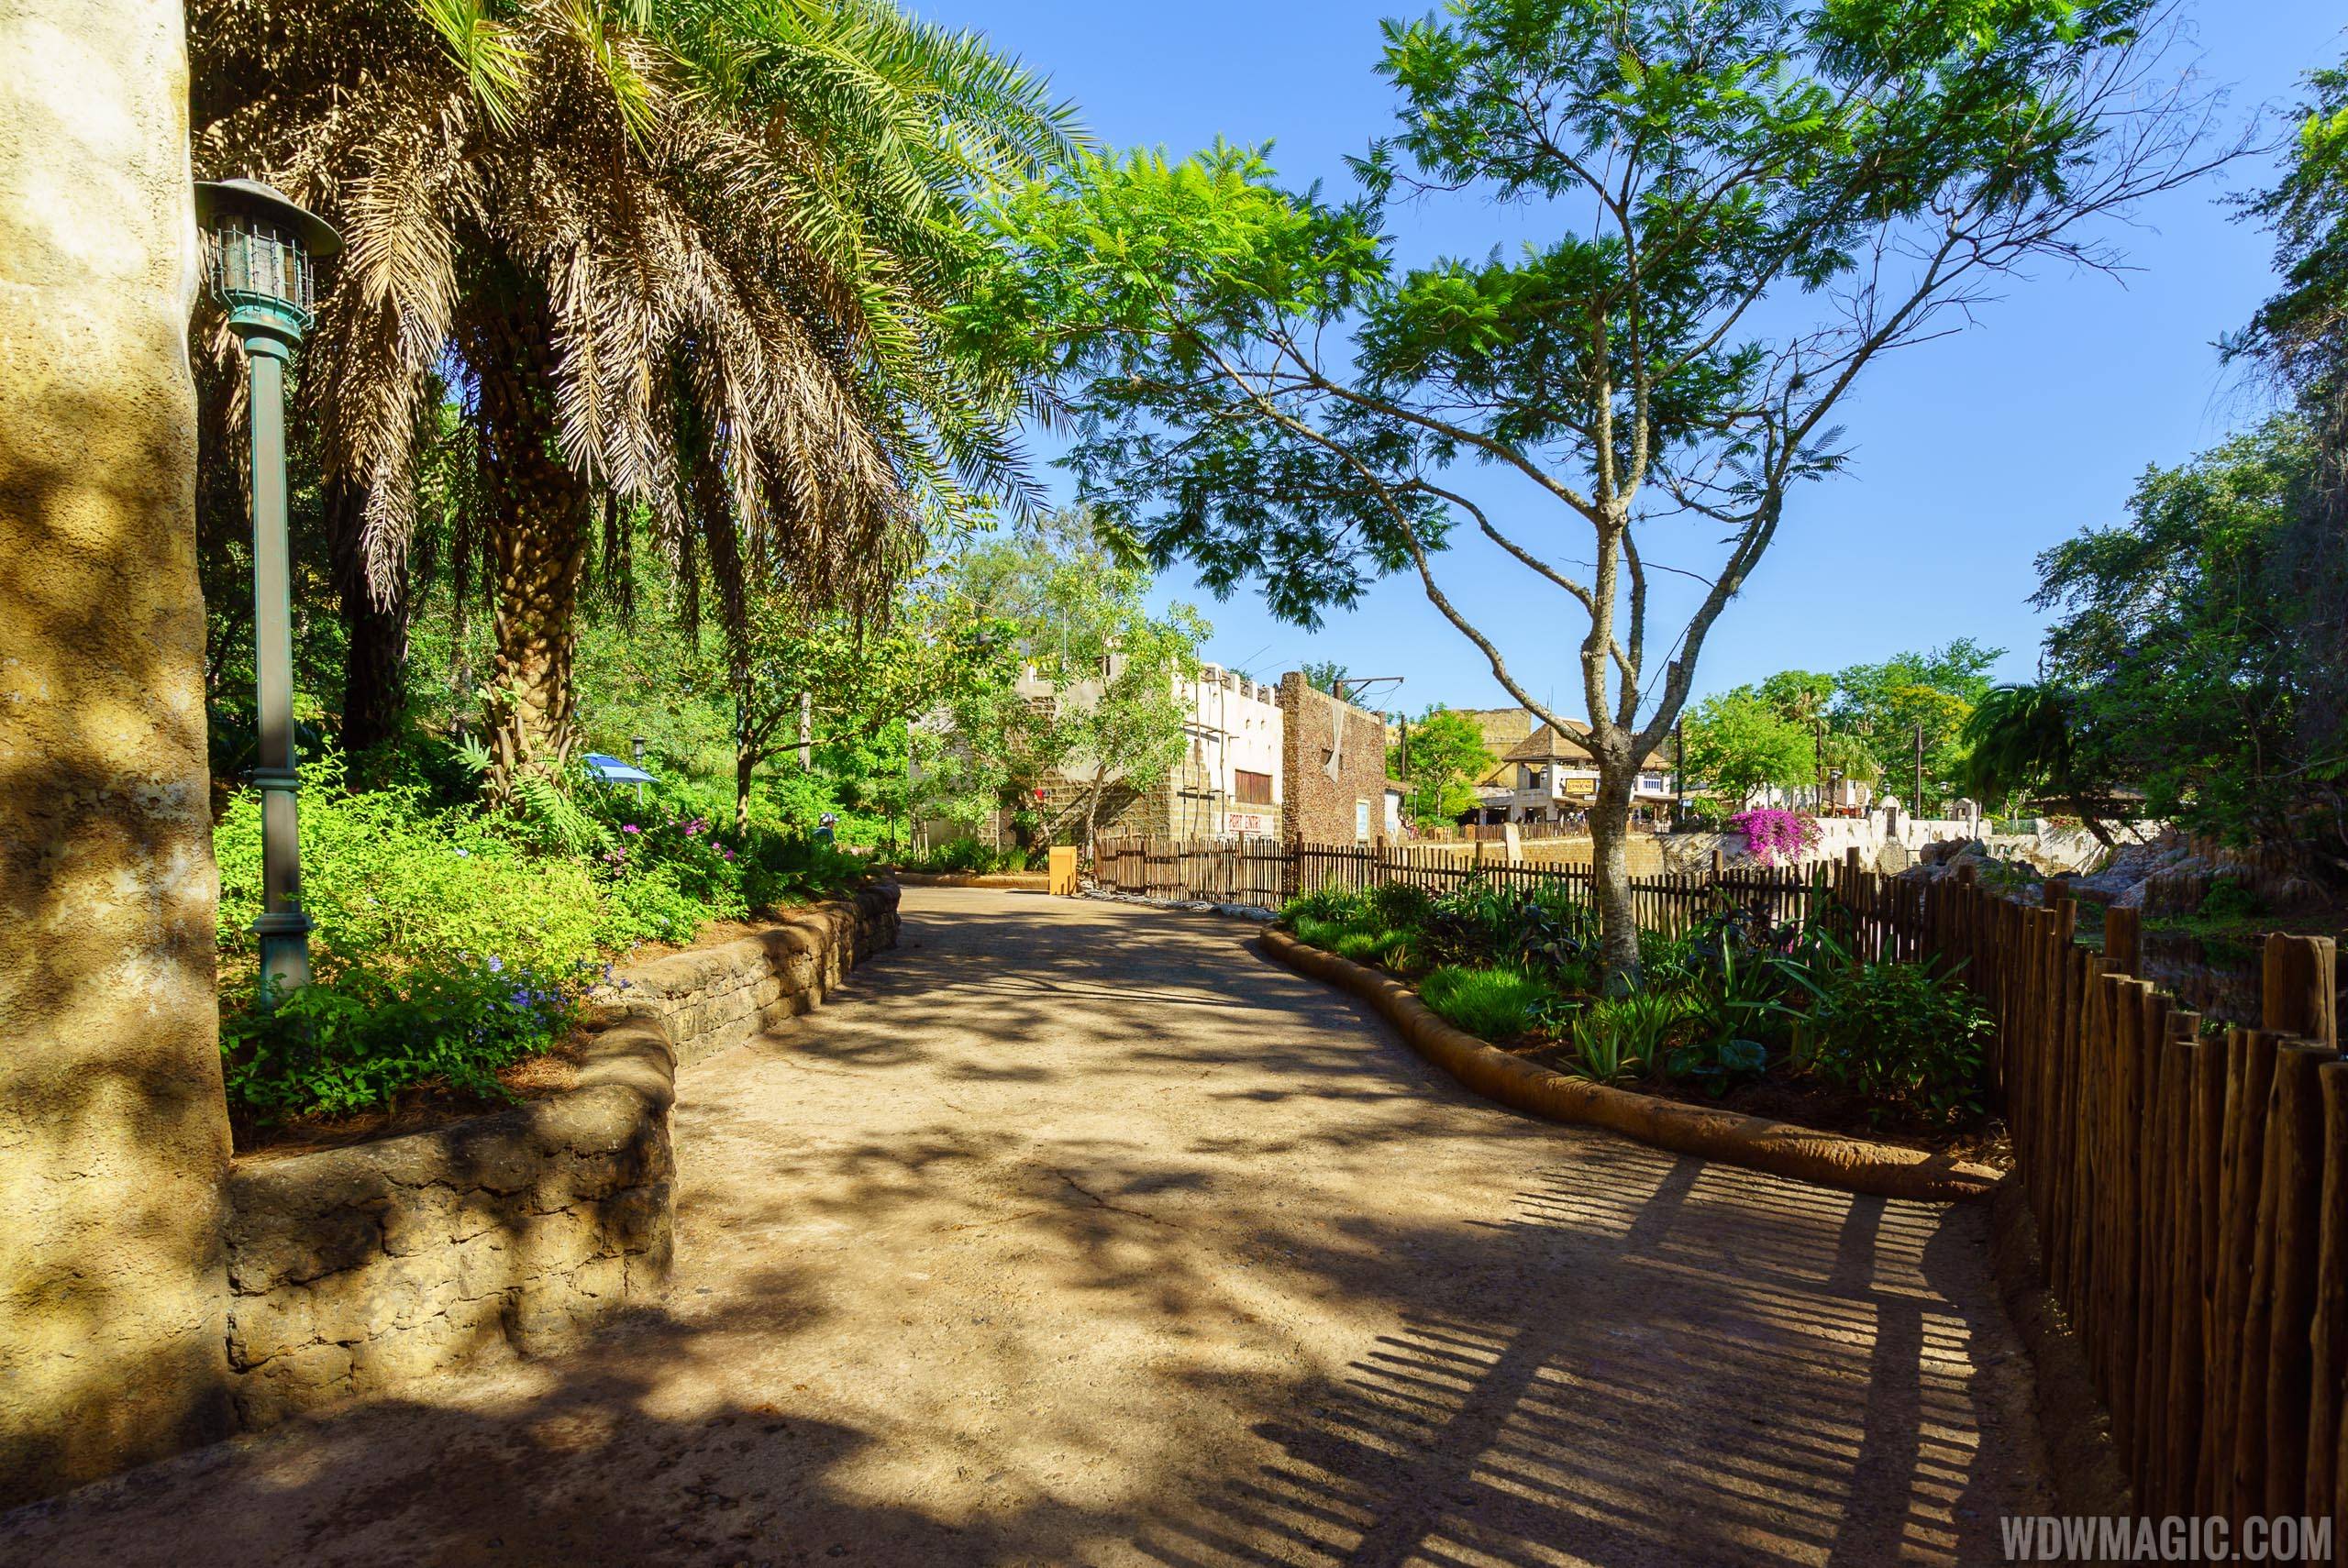 Pandora to Harambe walkway